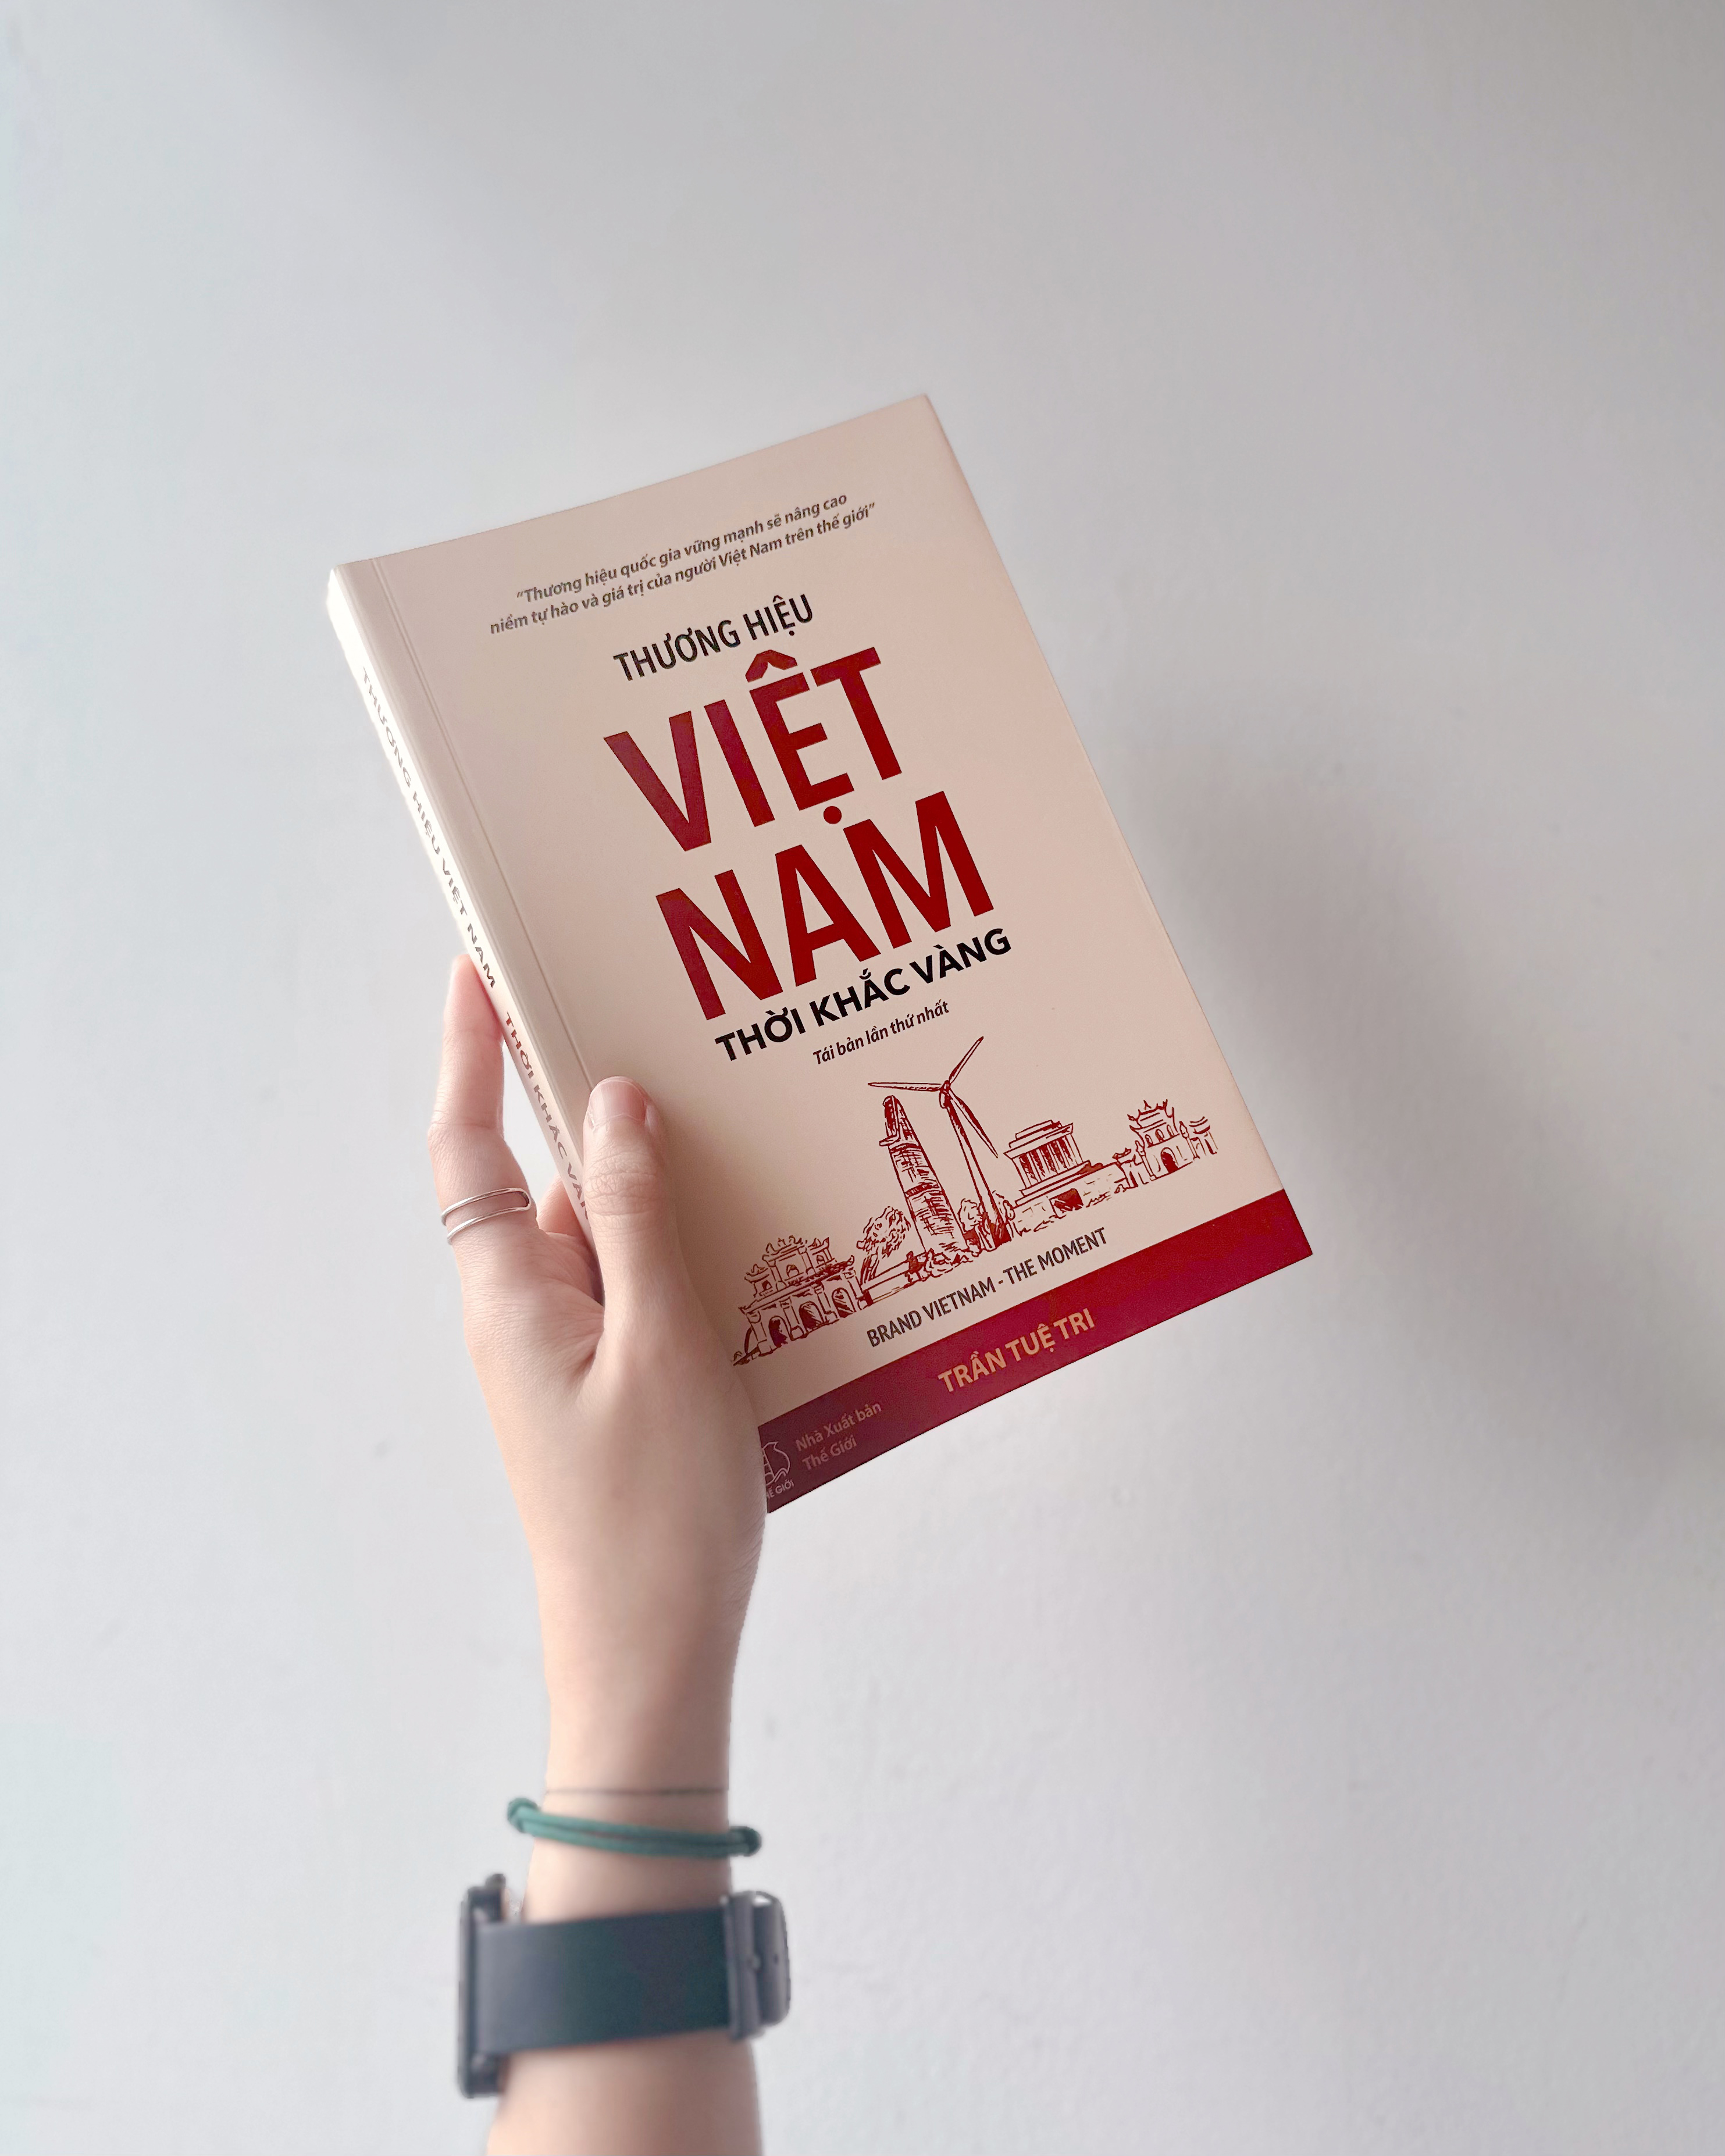 THƯƠNG HIỆU VIỆT NAM - THỜI KHẮC VÀNG (BRAND VIETNAM THE MOMENT) - Trần Tuệ Tri - (bìa mềm)